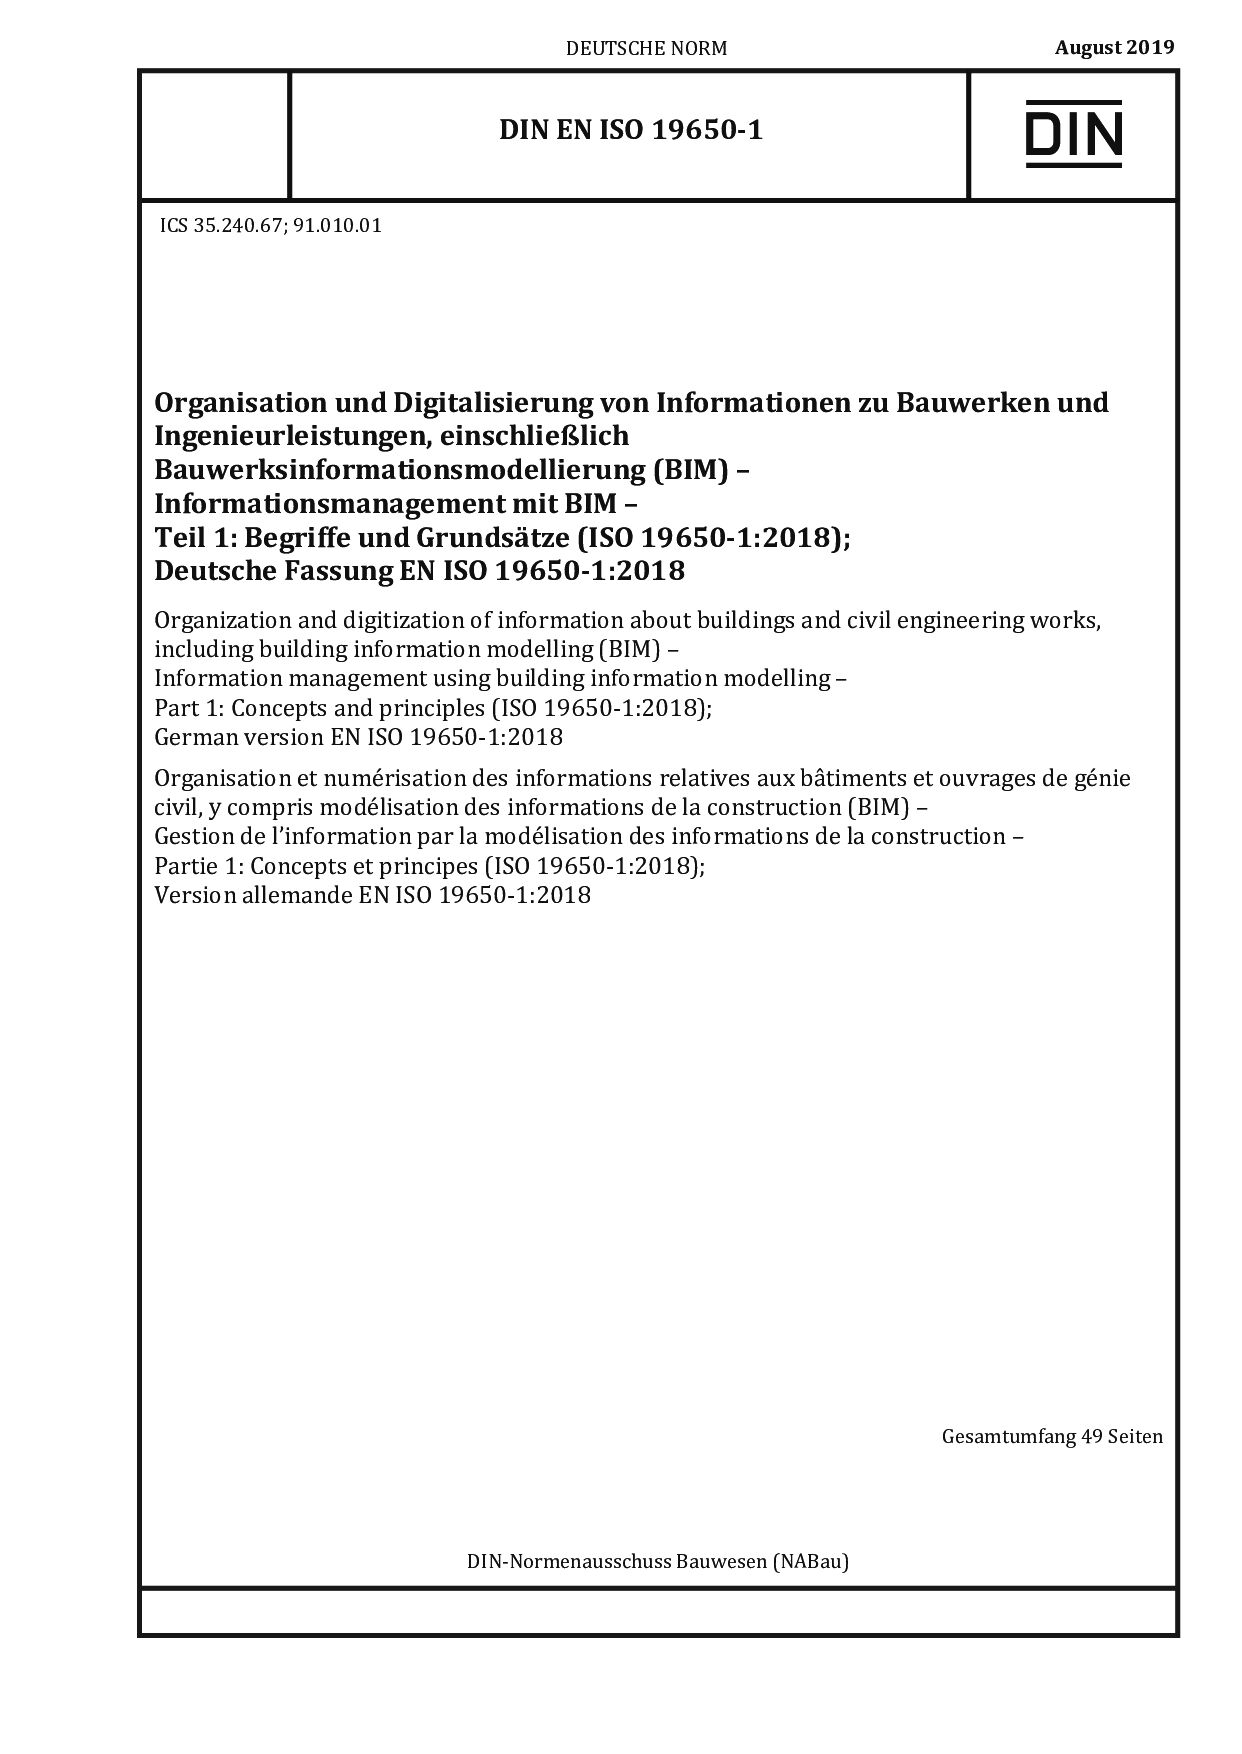 DIN EN ISO 19650-1:2019-08封面图